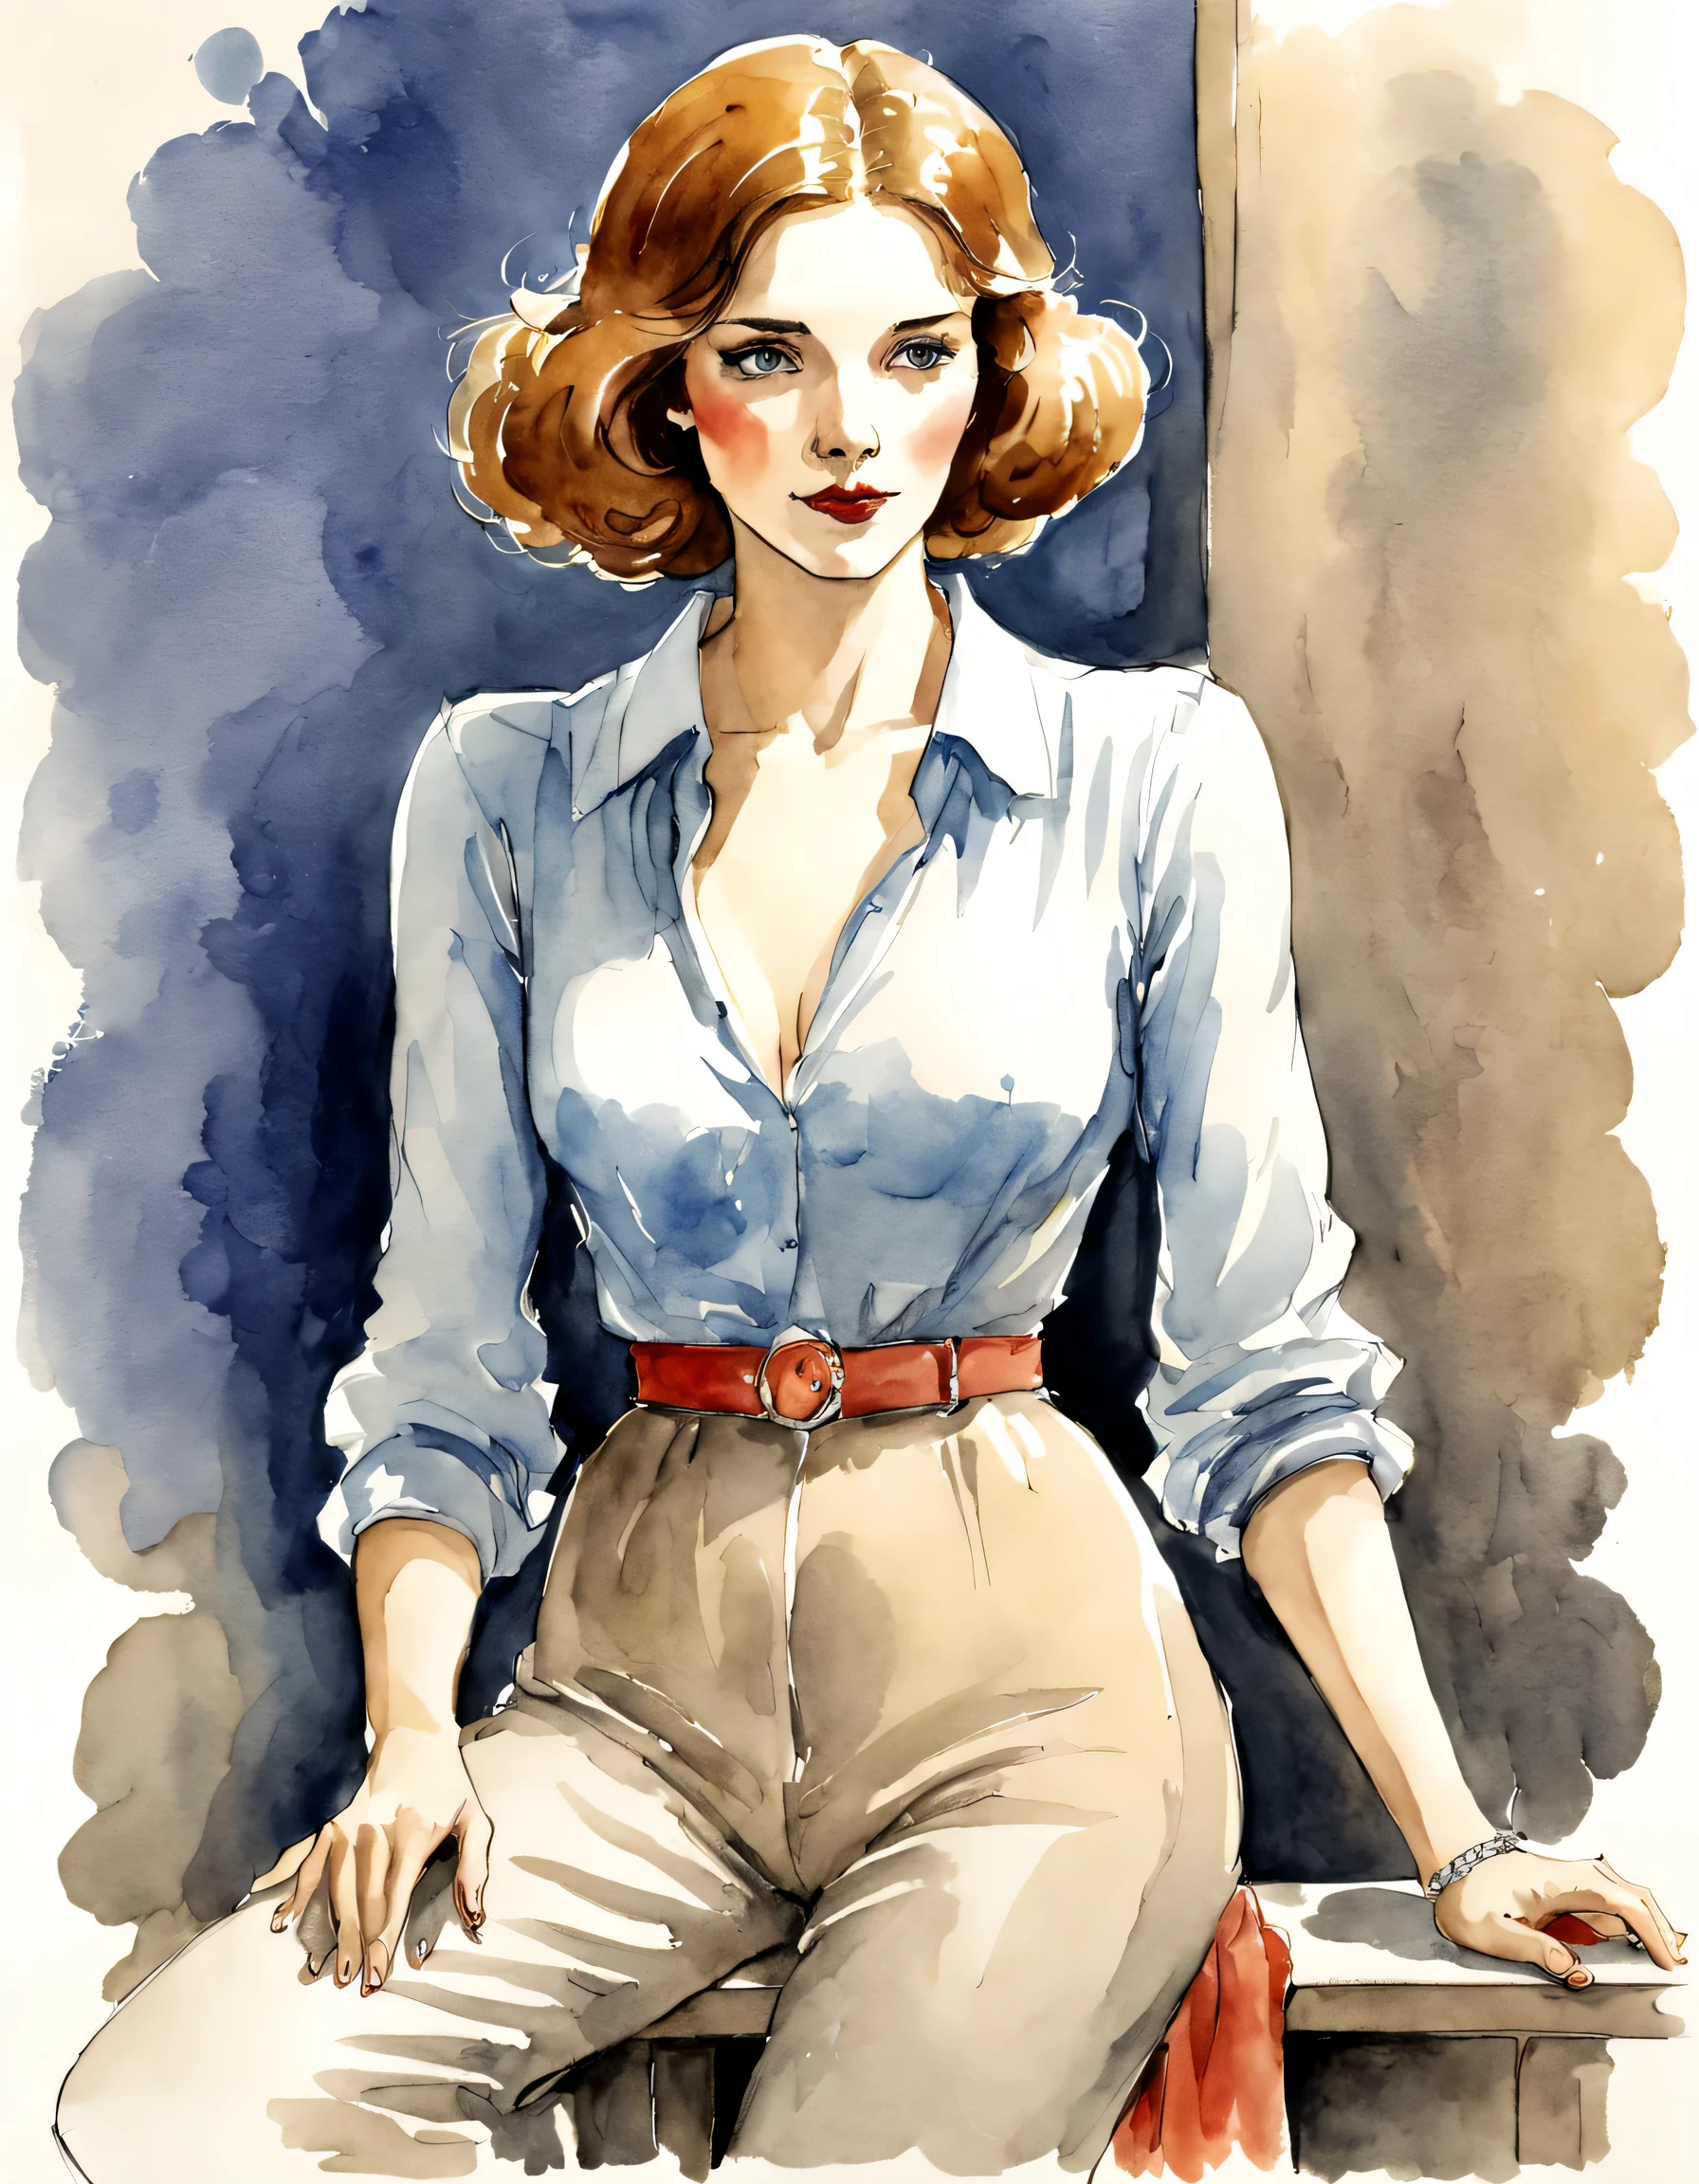 boceto en acuarela de una mujer, ilustración de Jean-Pierre Gibrat 